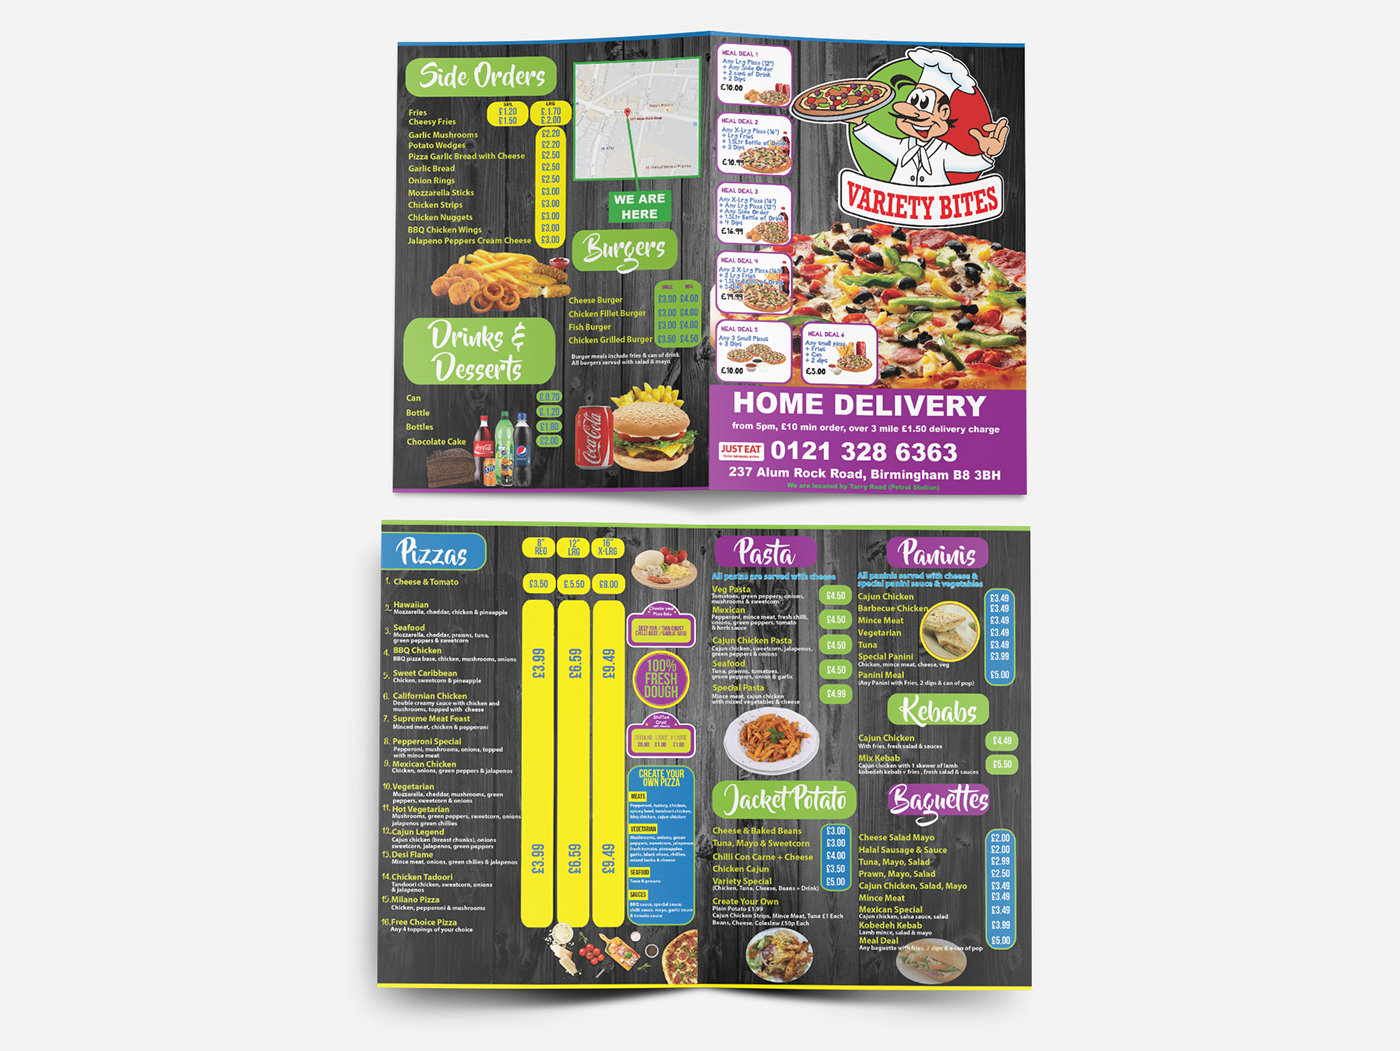 Folded leaflets leaflets Advertising  menu A4 folded Menu Leaflets